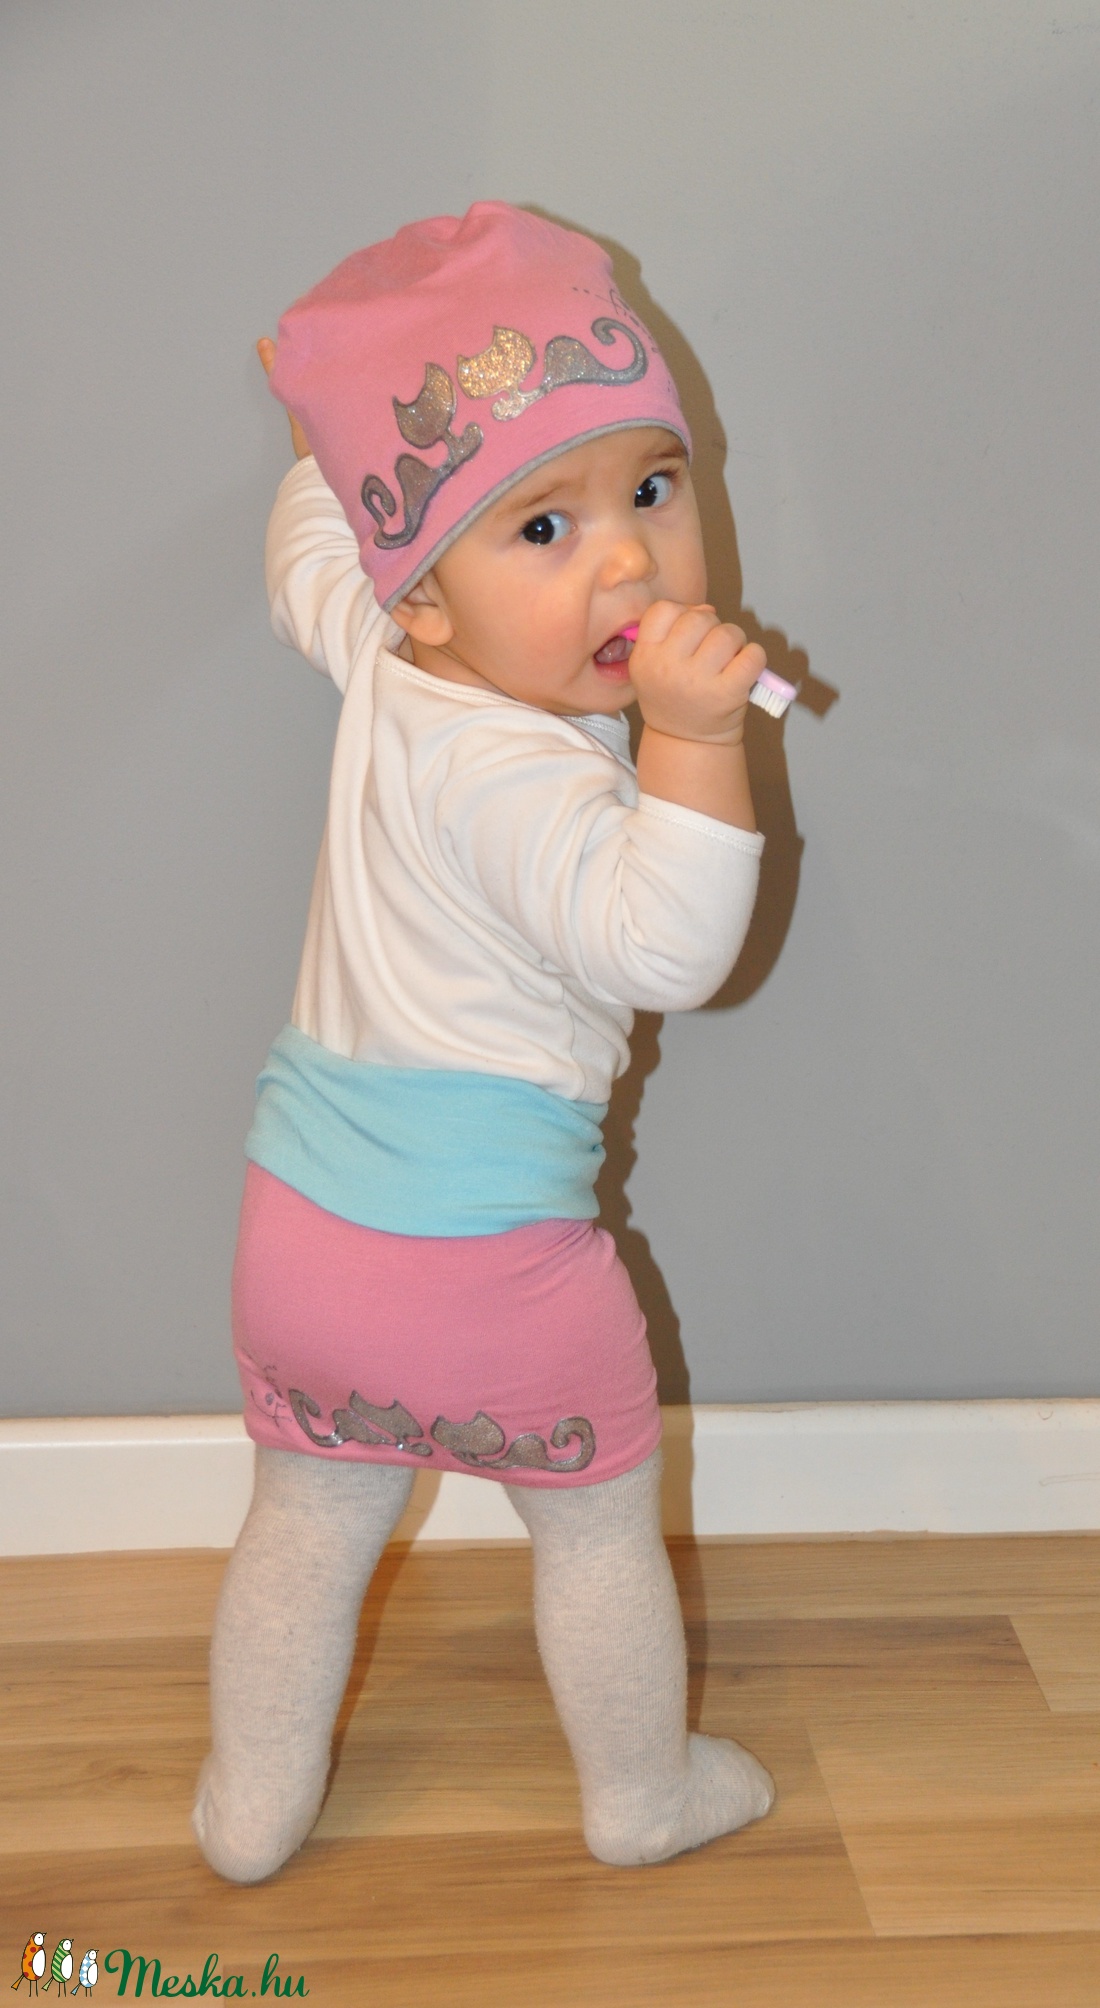 Fiorella kifordítható gyerek SAPKA pink-szürke/ ezüst cicás - ruha & divat - babaruha & gyerekruha - babasapka - Meska.hu